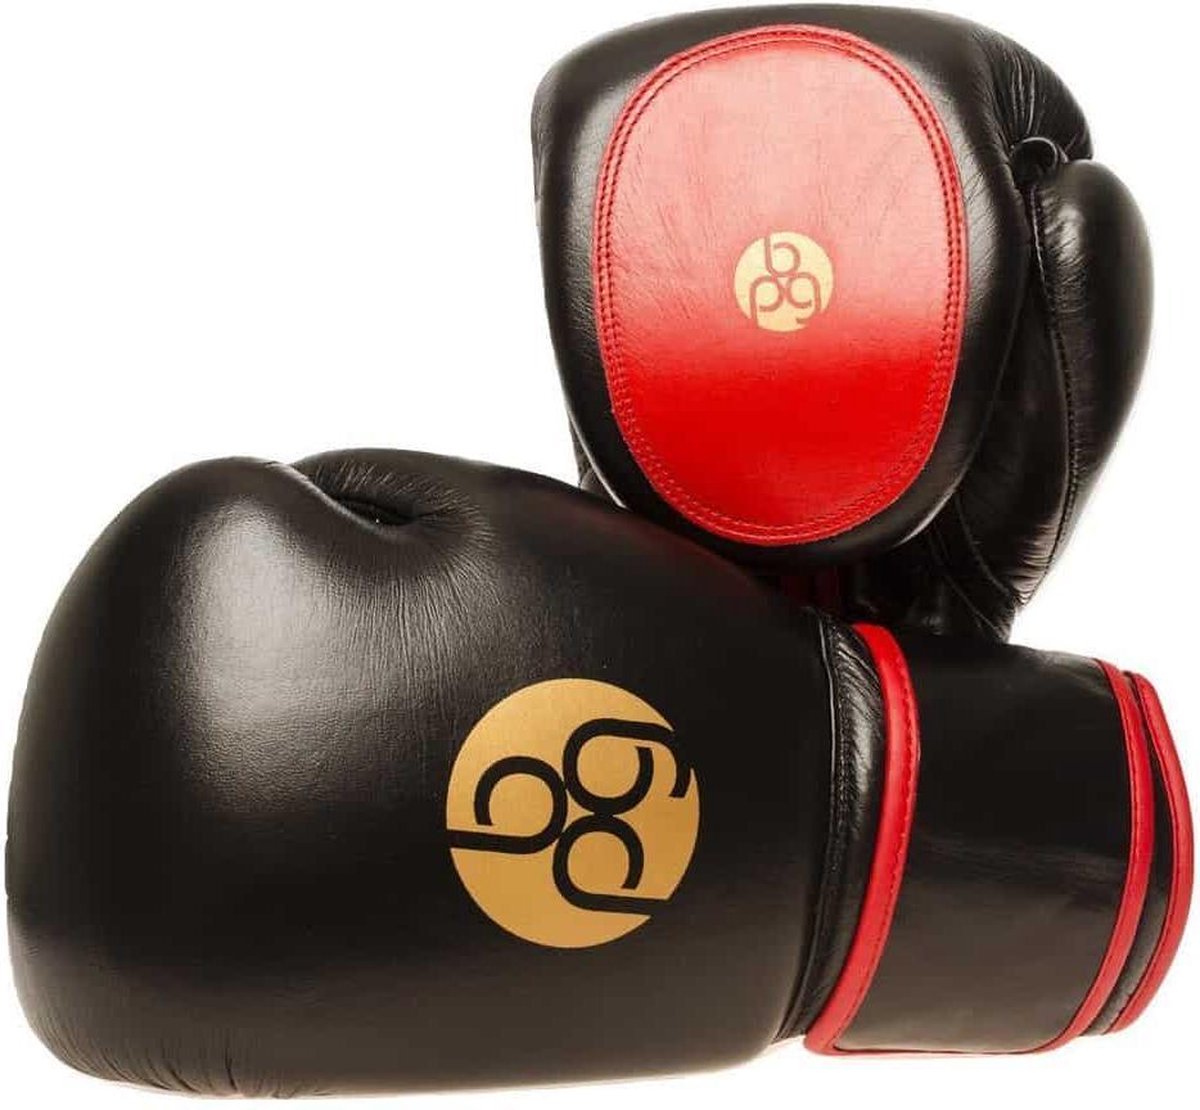 BPG-boxing pad gloves - Group trainer - Bokshandschoenen - 14oz - Bokshandschoenen met geïntrigeerde pad - Handpad